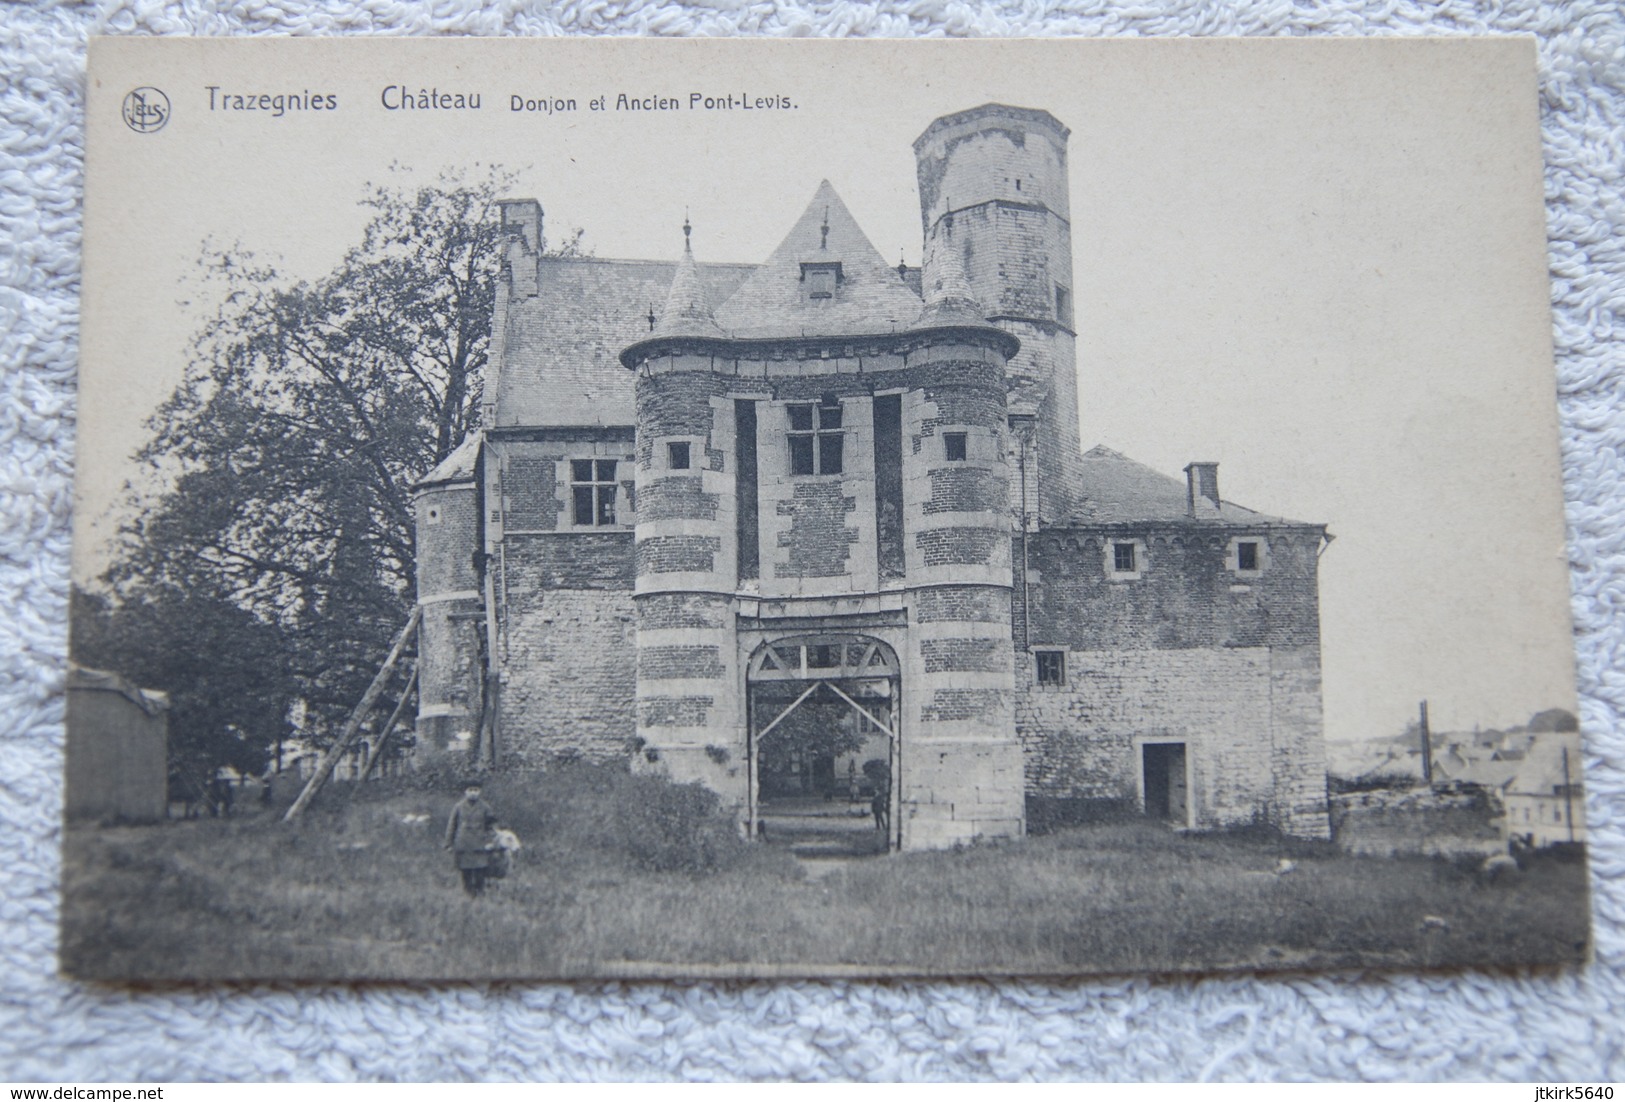 Trazegnies "Château, Donjon Et Ancien Pont-levis" - Courcelles